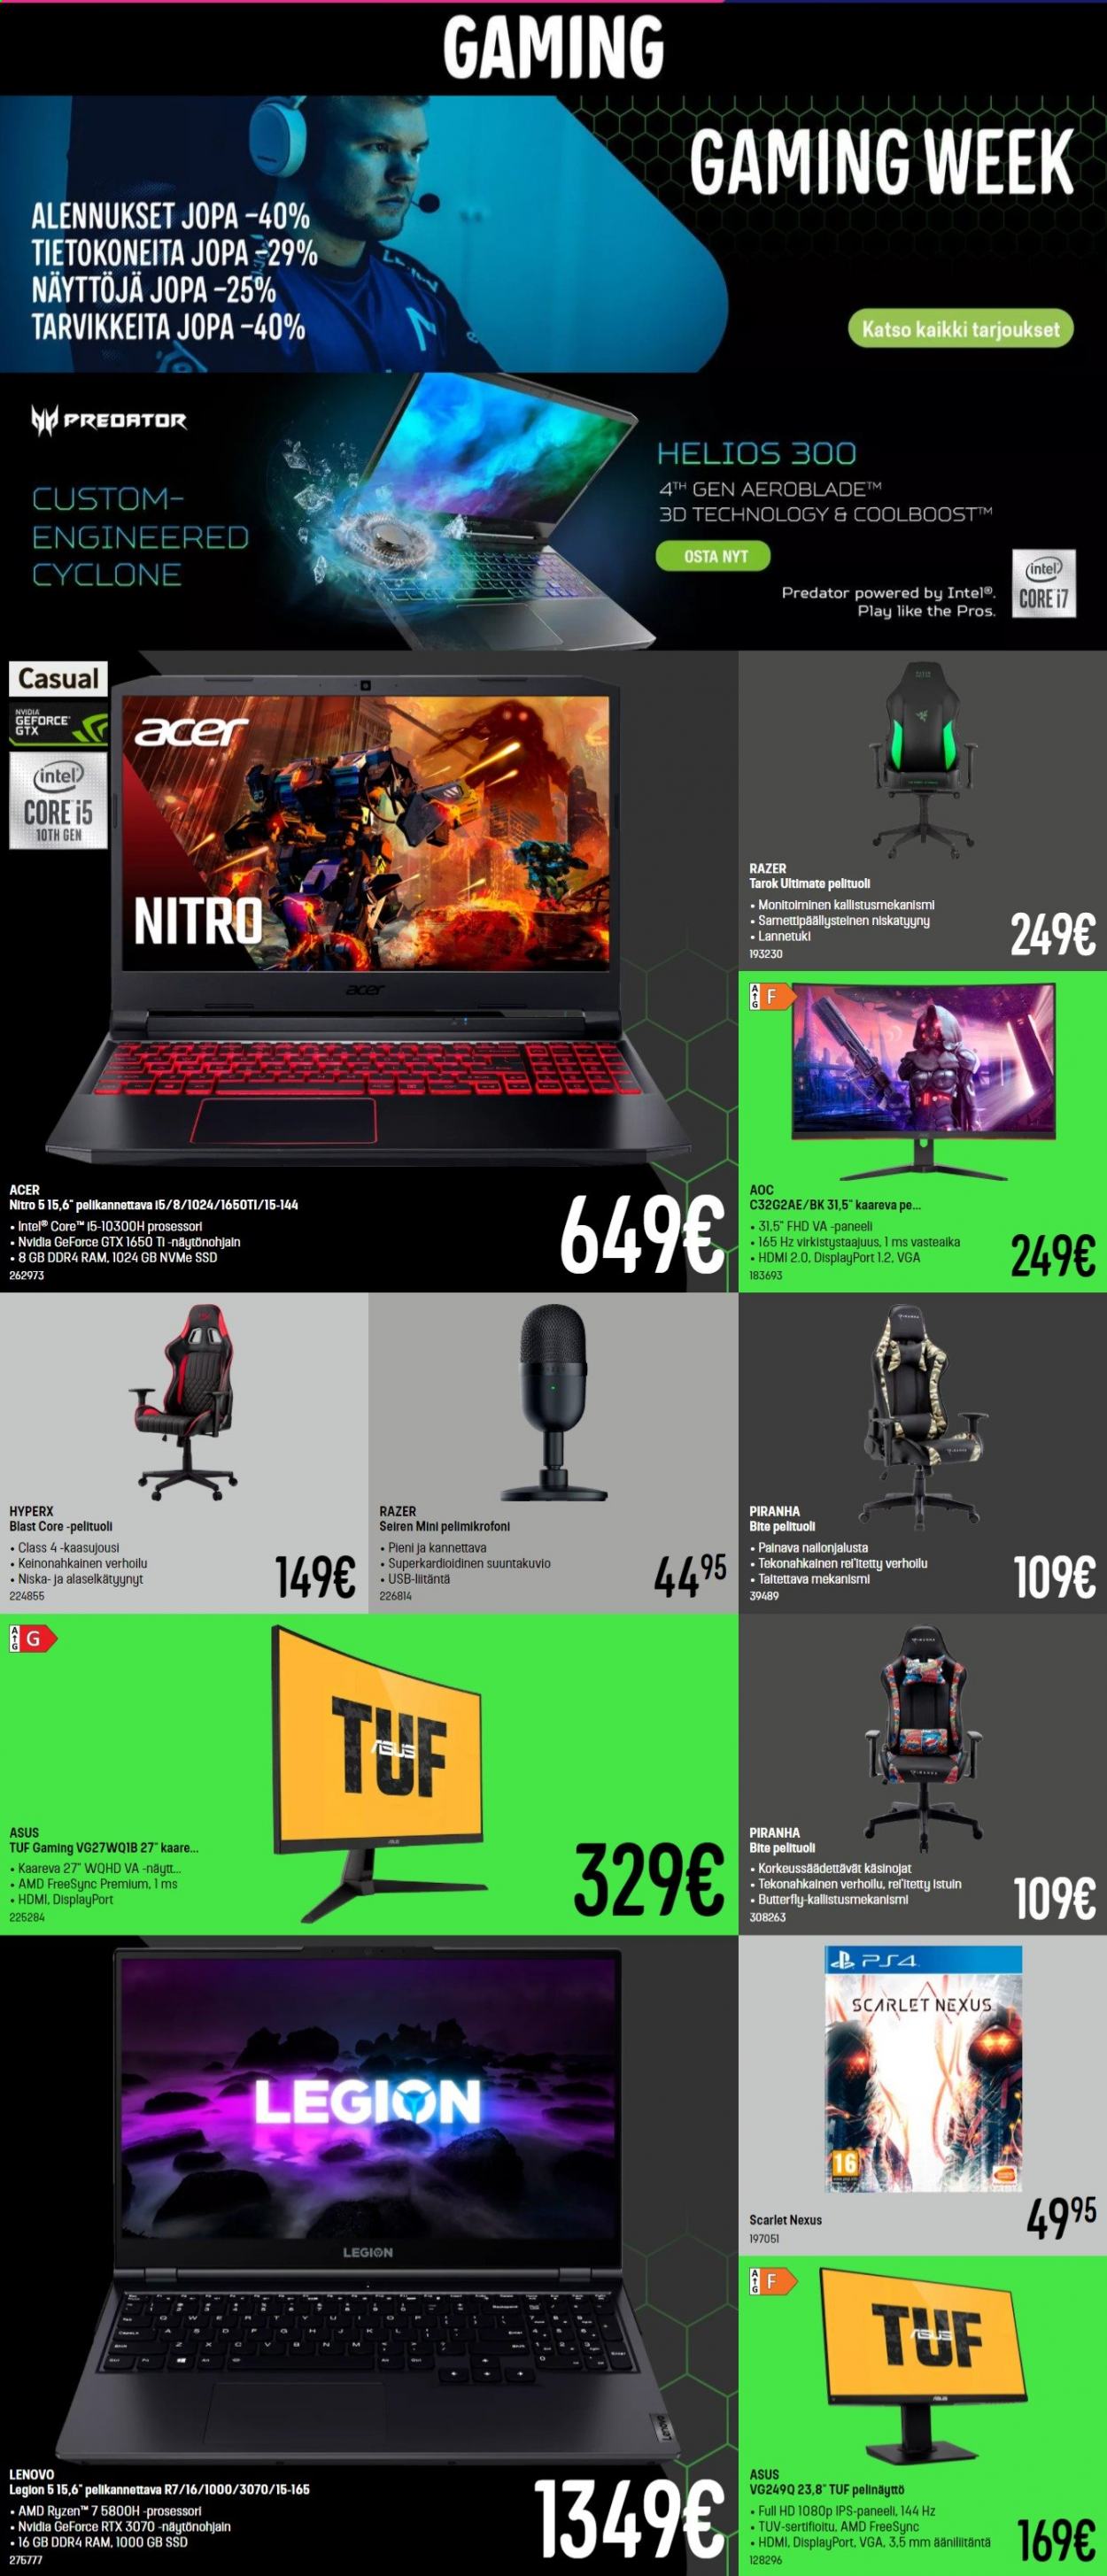 thumbnail - Gigantti tarjoukset  - 21.06.2021 - 27.06.2021 - Tarjoustuotteet - Asus, Acer, pelikannettava, HyperX, Intel, Razer, pelinäyttö, PS4. Sivu 2.